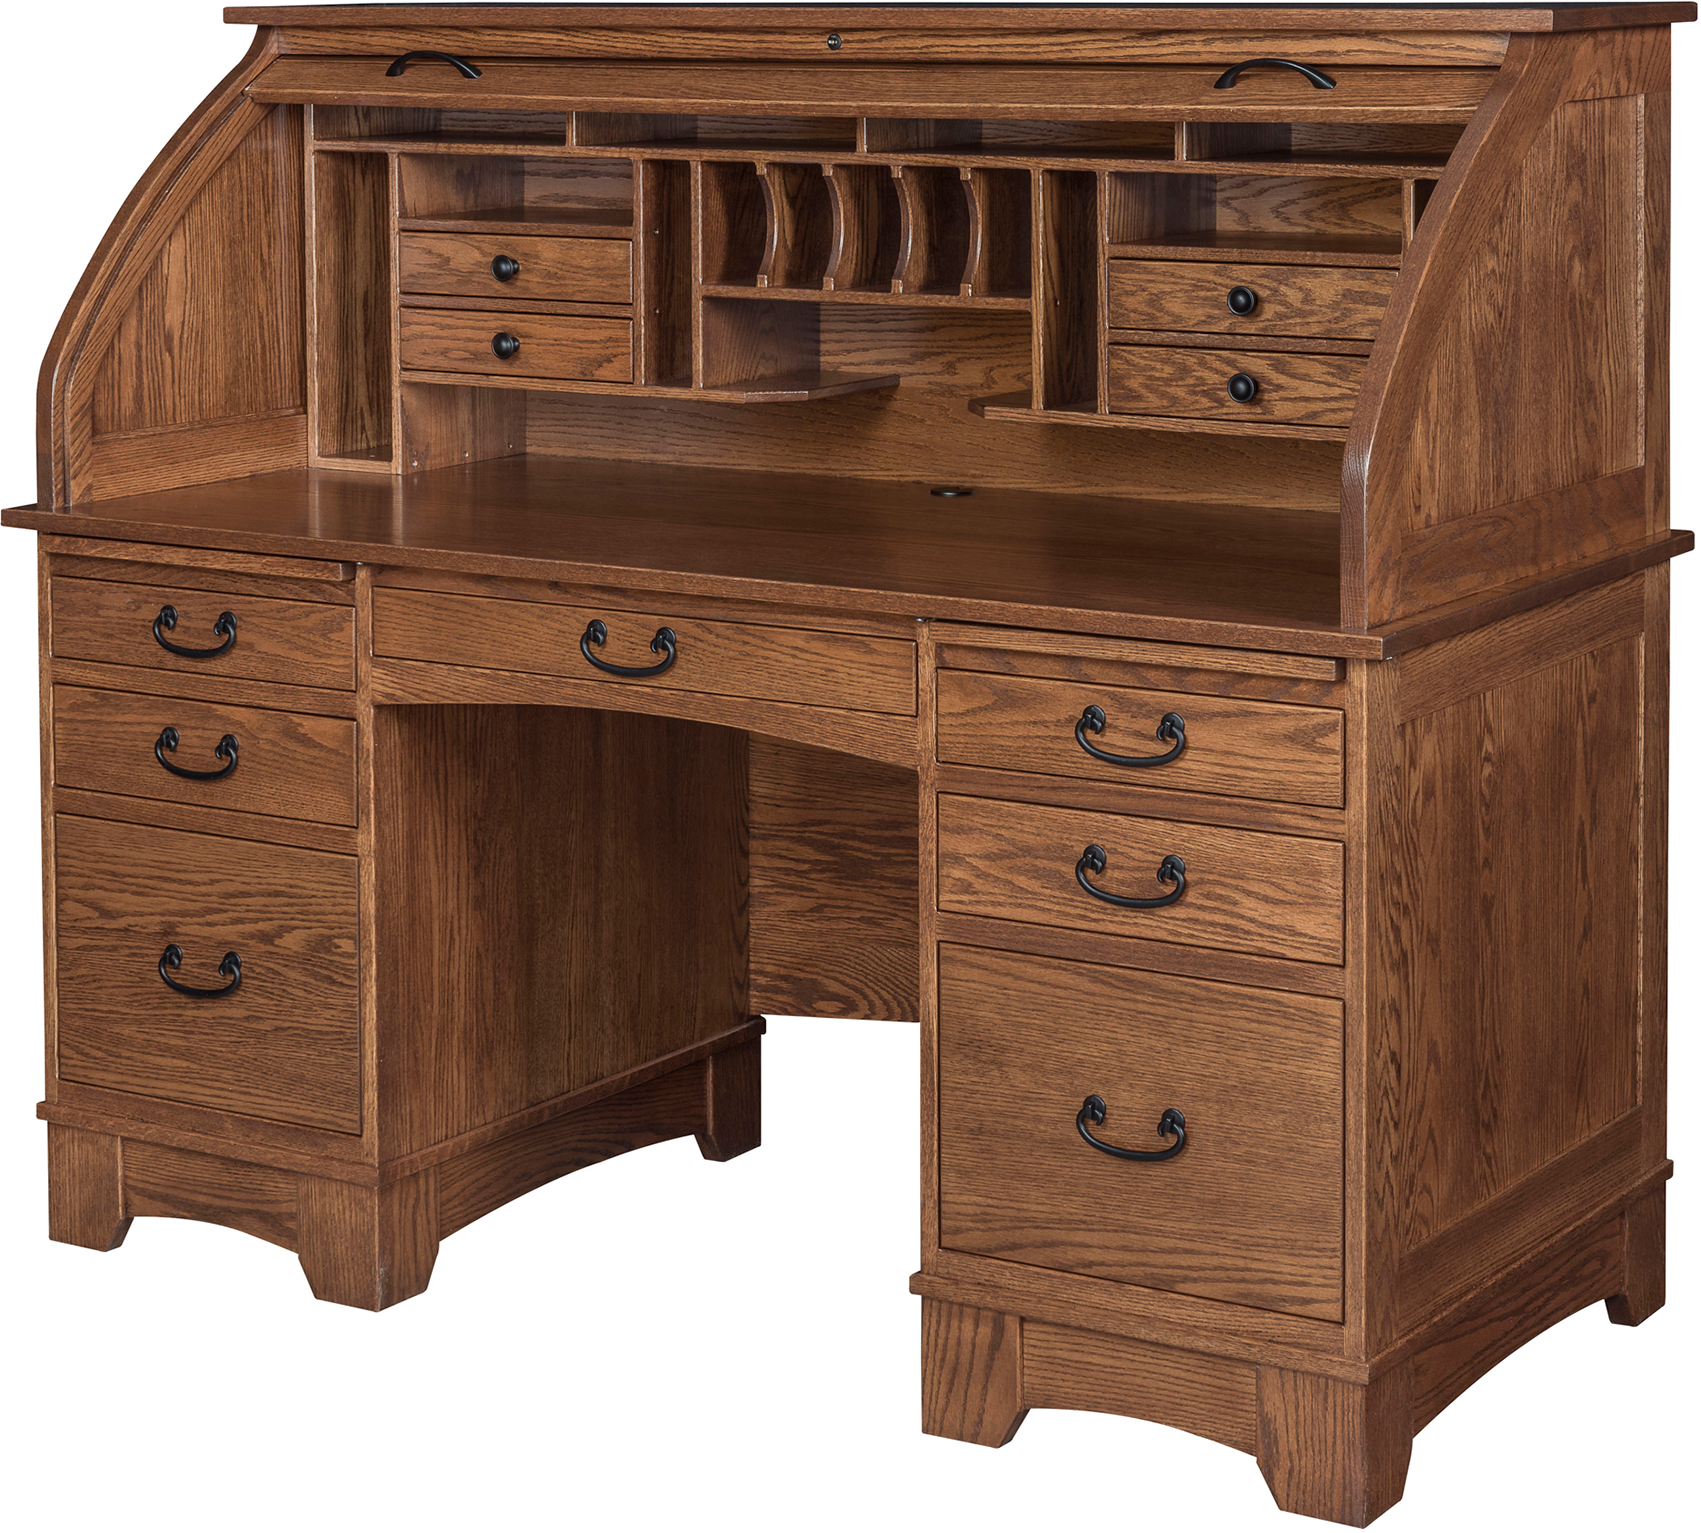 54 Oak Executive Rolltop Desk Antique Medium, 52% OFF